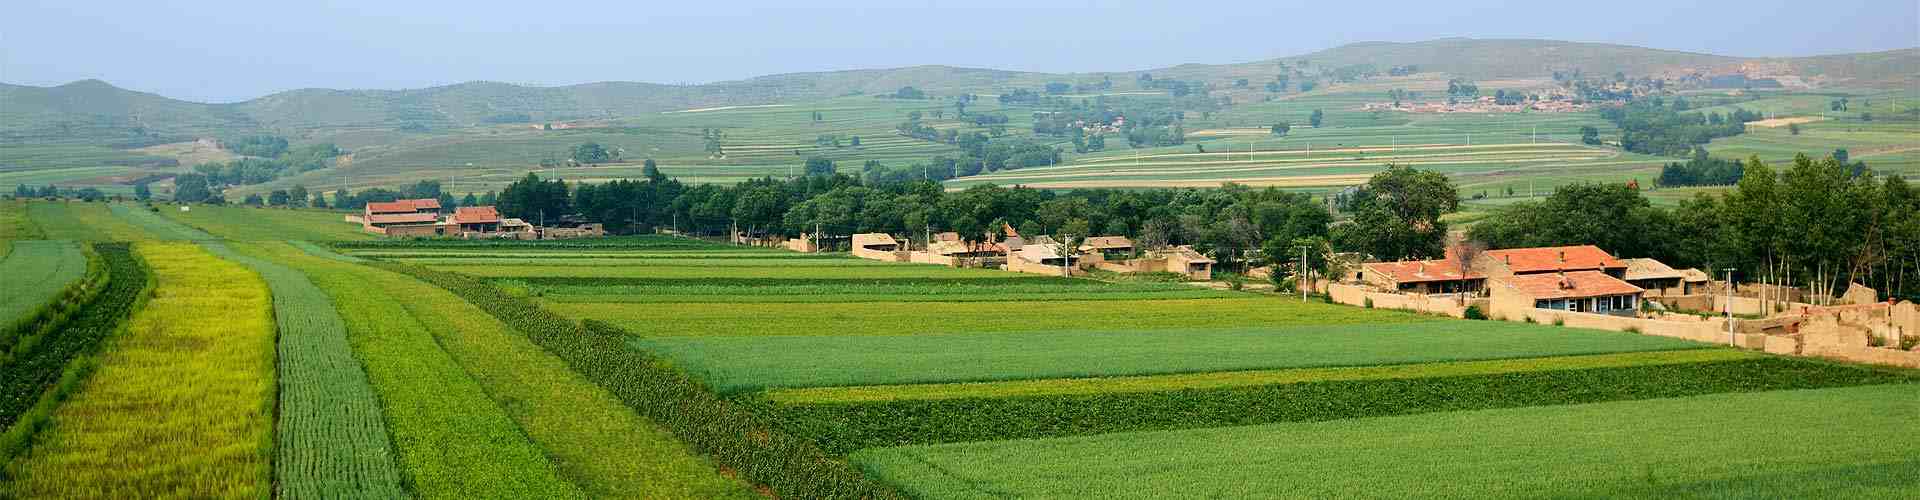 Casas rurales en Colera
           
           


          
          
          
